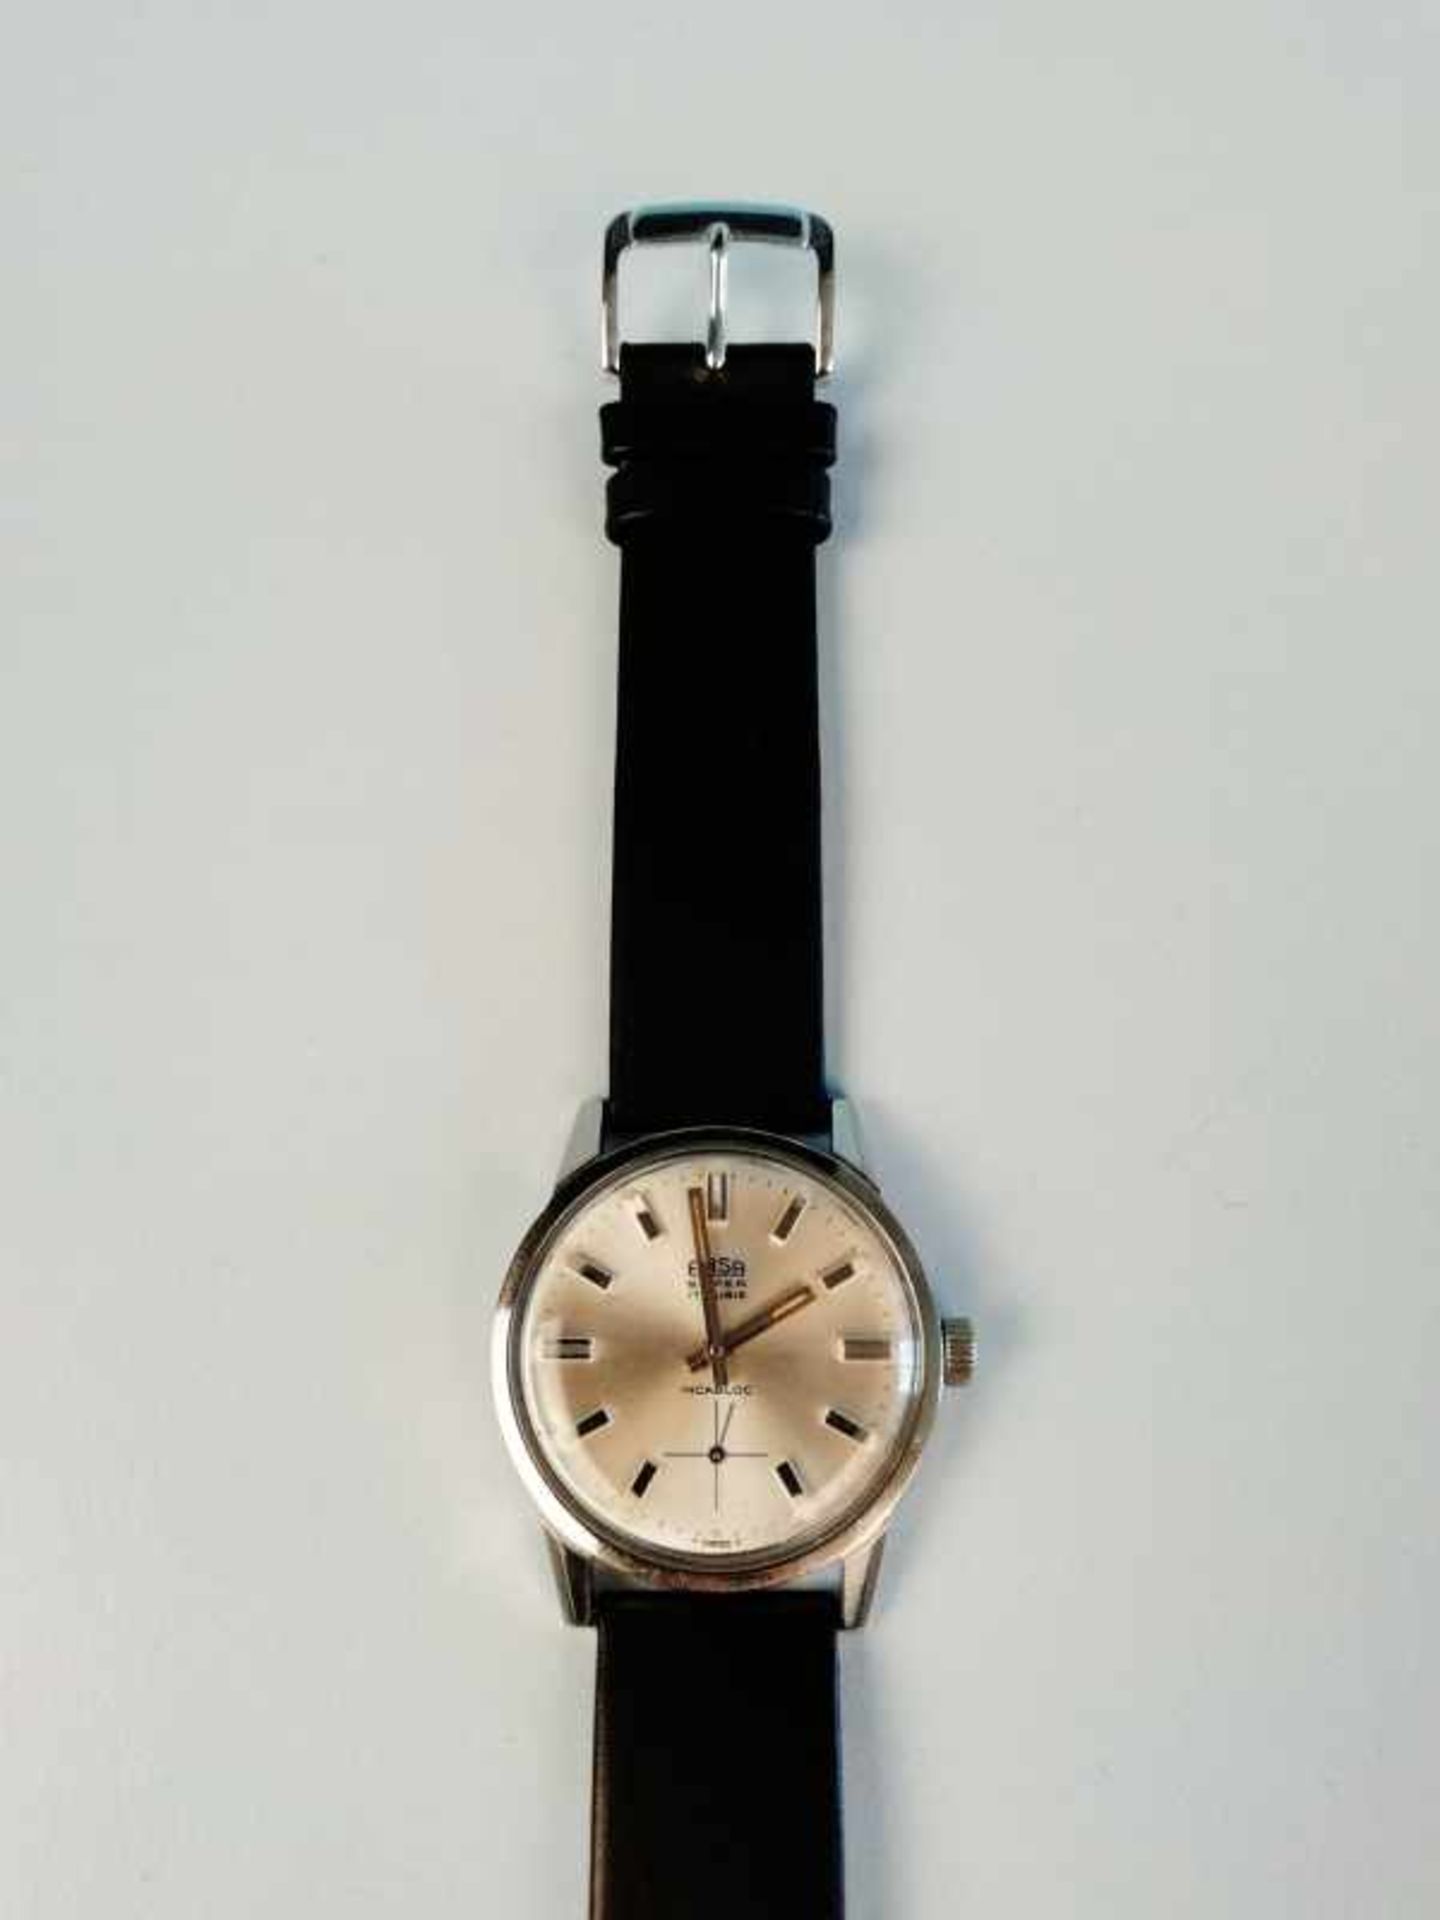 Armbanduhr "Arsa"Metall, Vintage, Ankerwerk, 38,6g, Werkservice wird empfohlen, keine Garantie auf